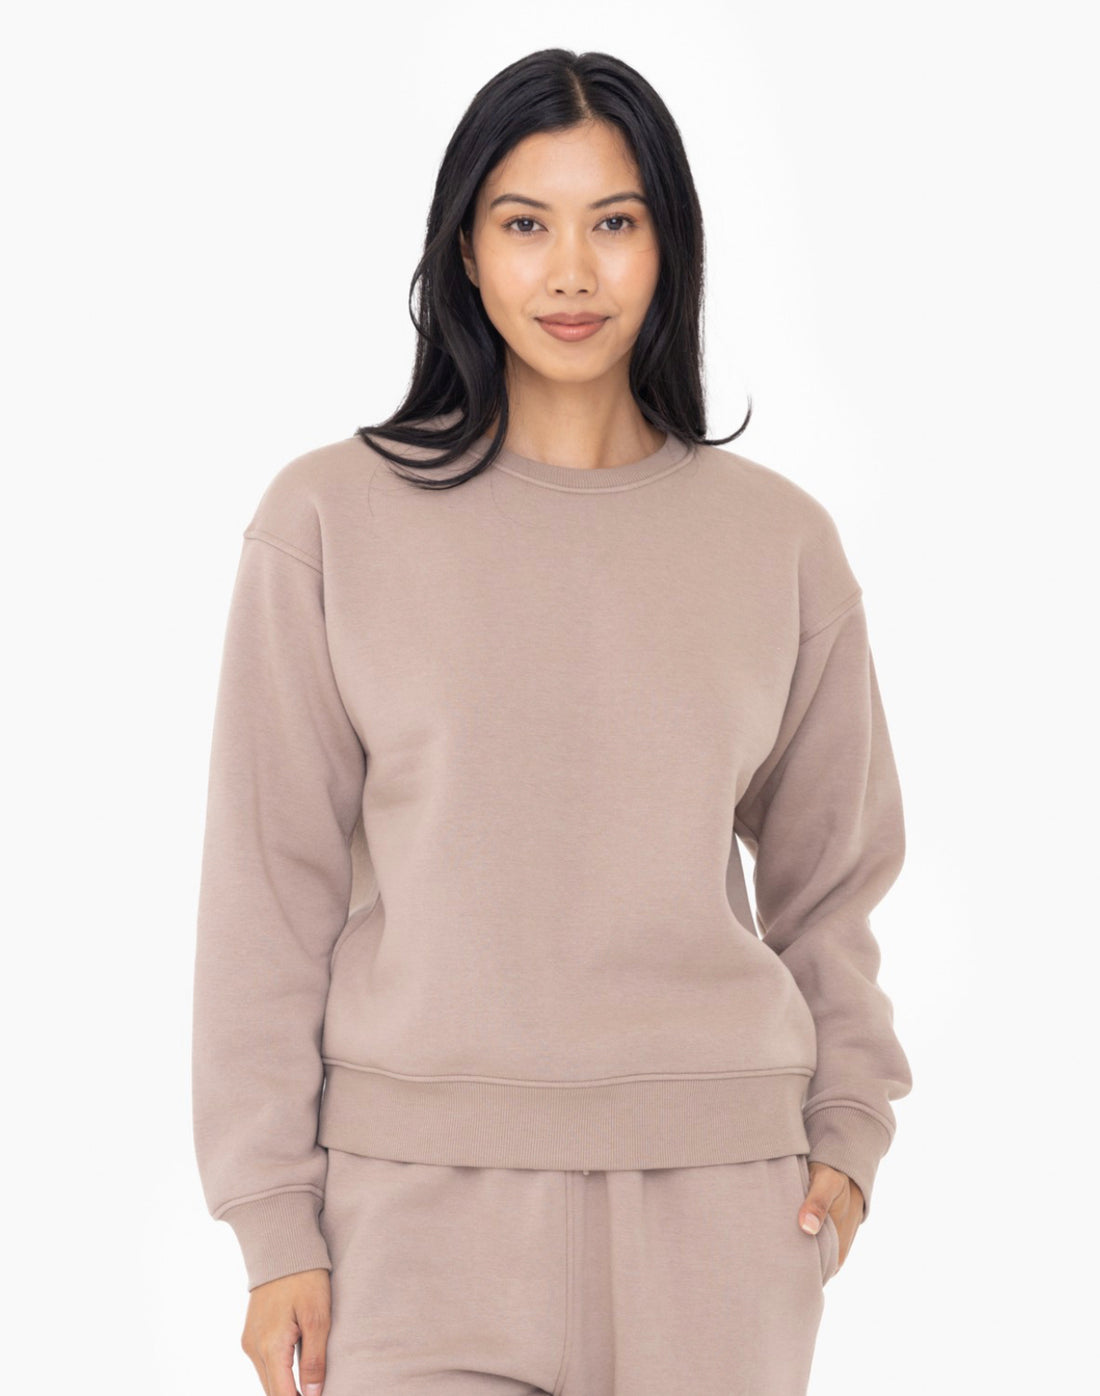 Mono B Toast Classic Fit Fleece Sweatshirt